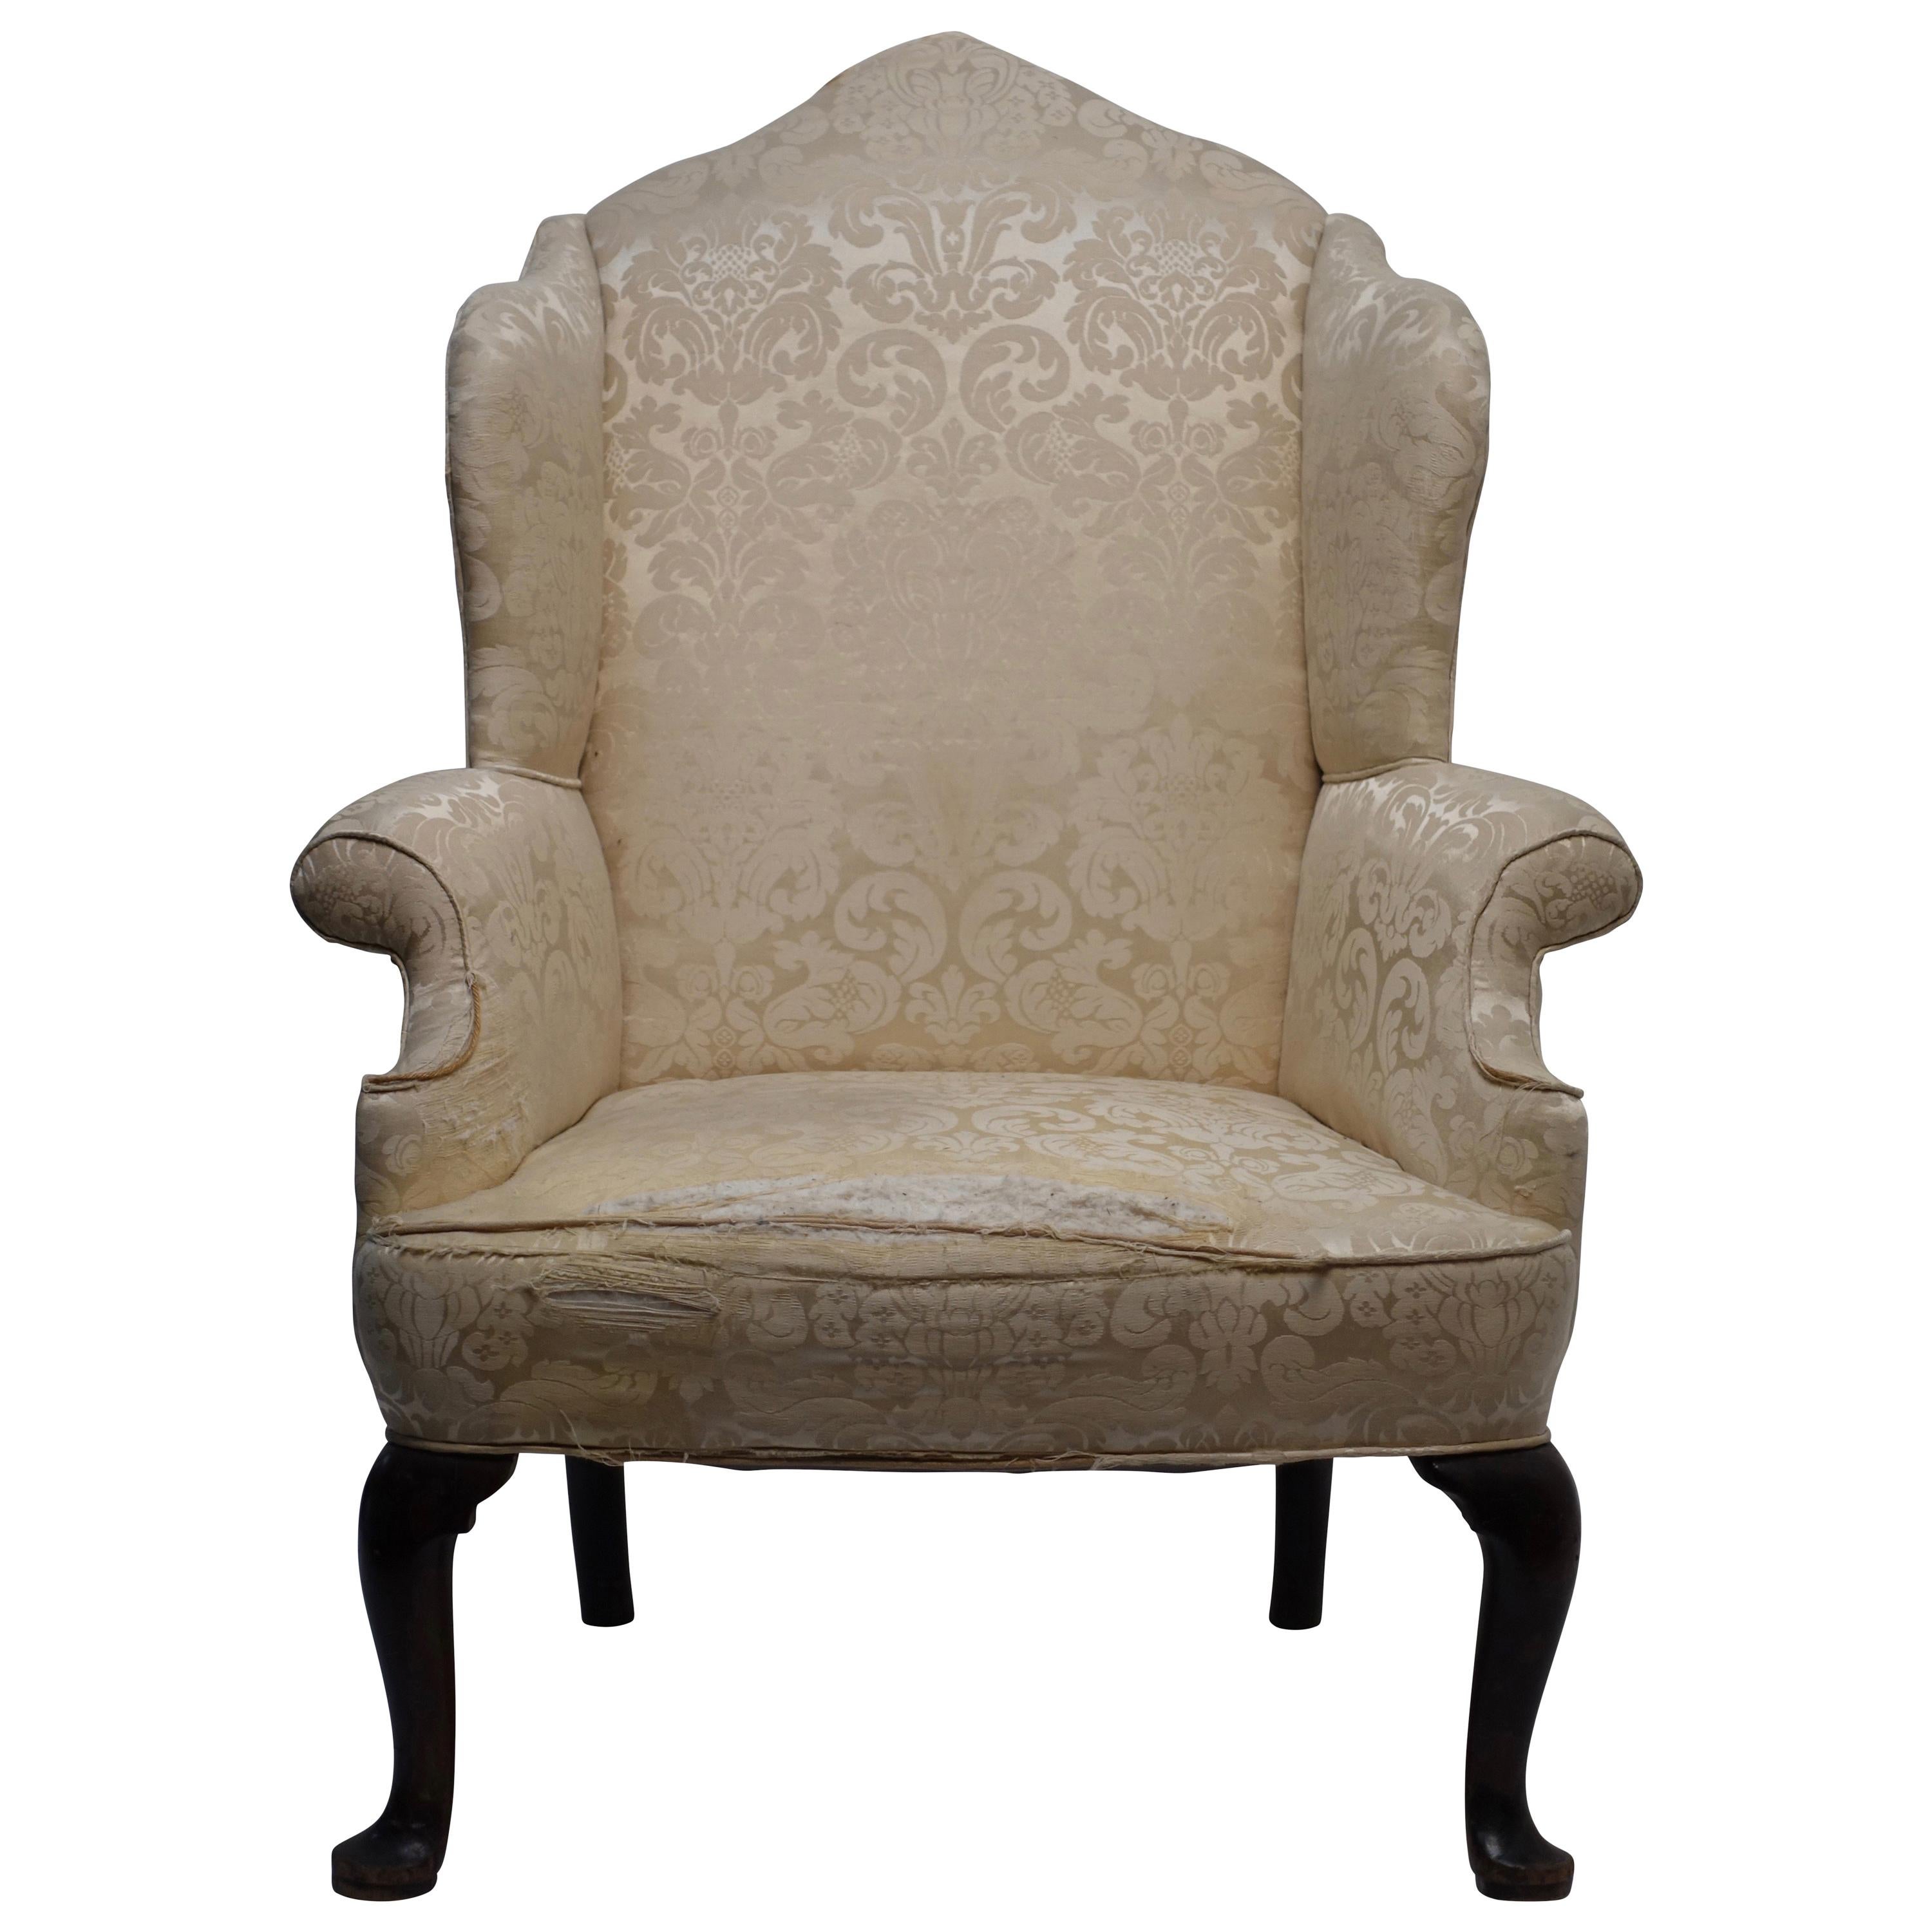 George III Wingback Chair, English, circa 1800